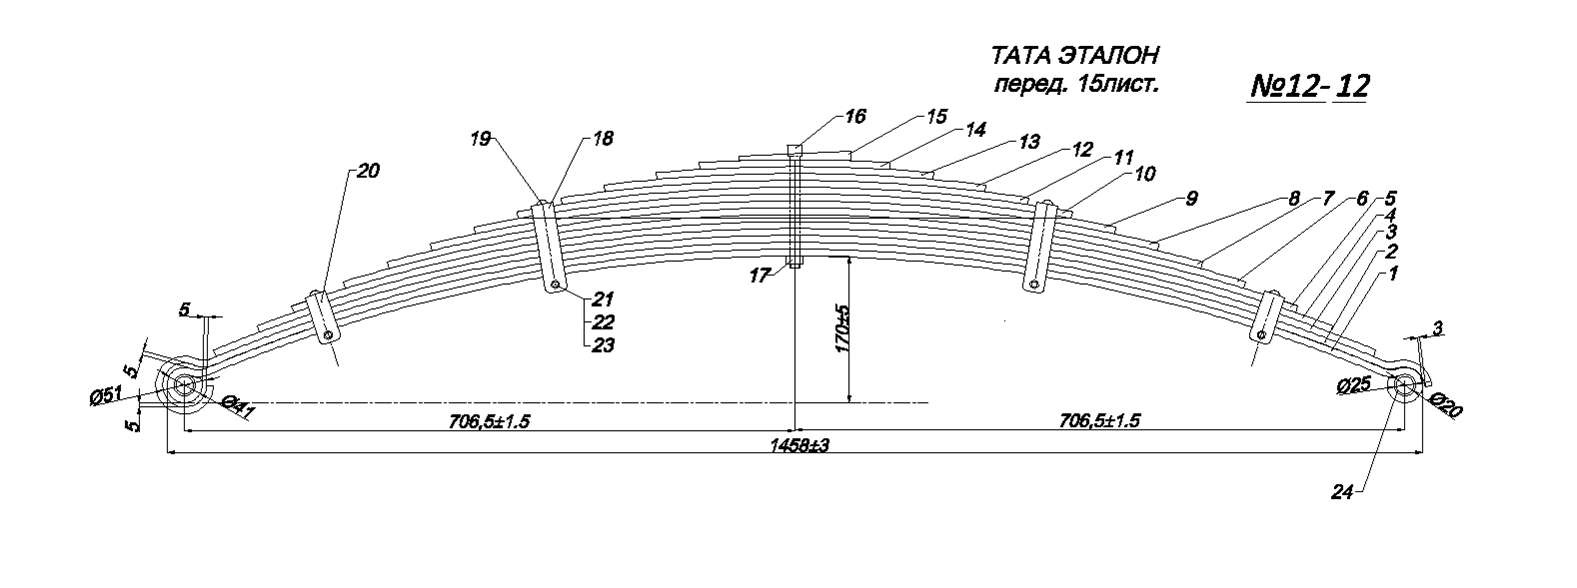 TATA ETALON рессора передняя 15-ти листовая усиленная (Арт.IR 12-12в)
Рессора комплектуется втулками
Усиление осуществляется за счет изготовление рессоры из полосы 70*10 (стандартная 70*8),